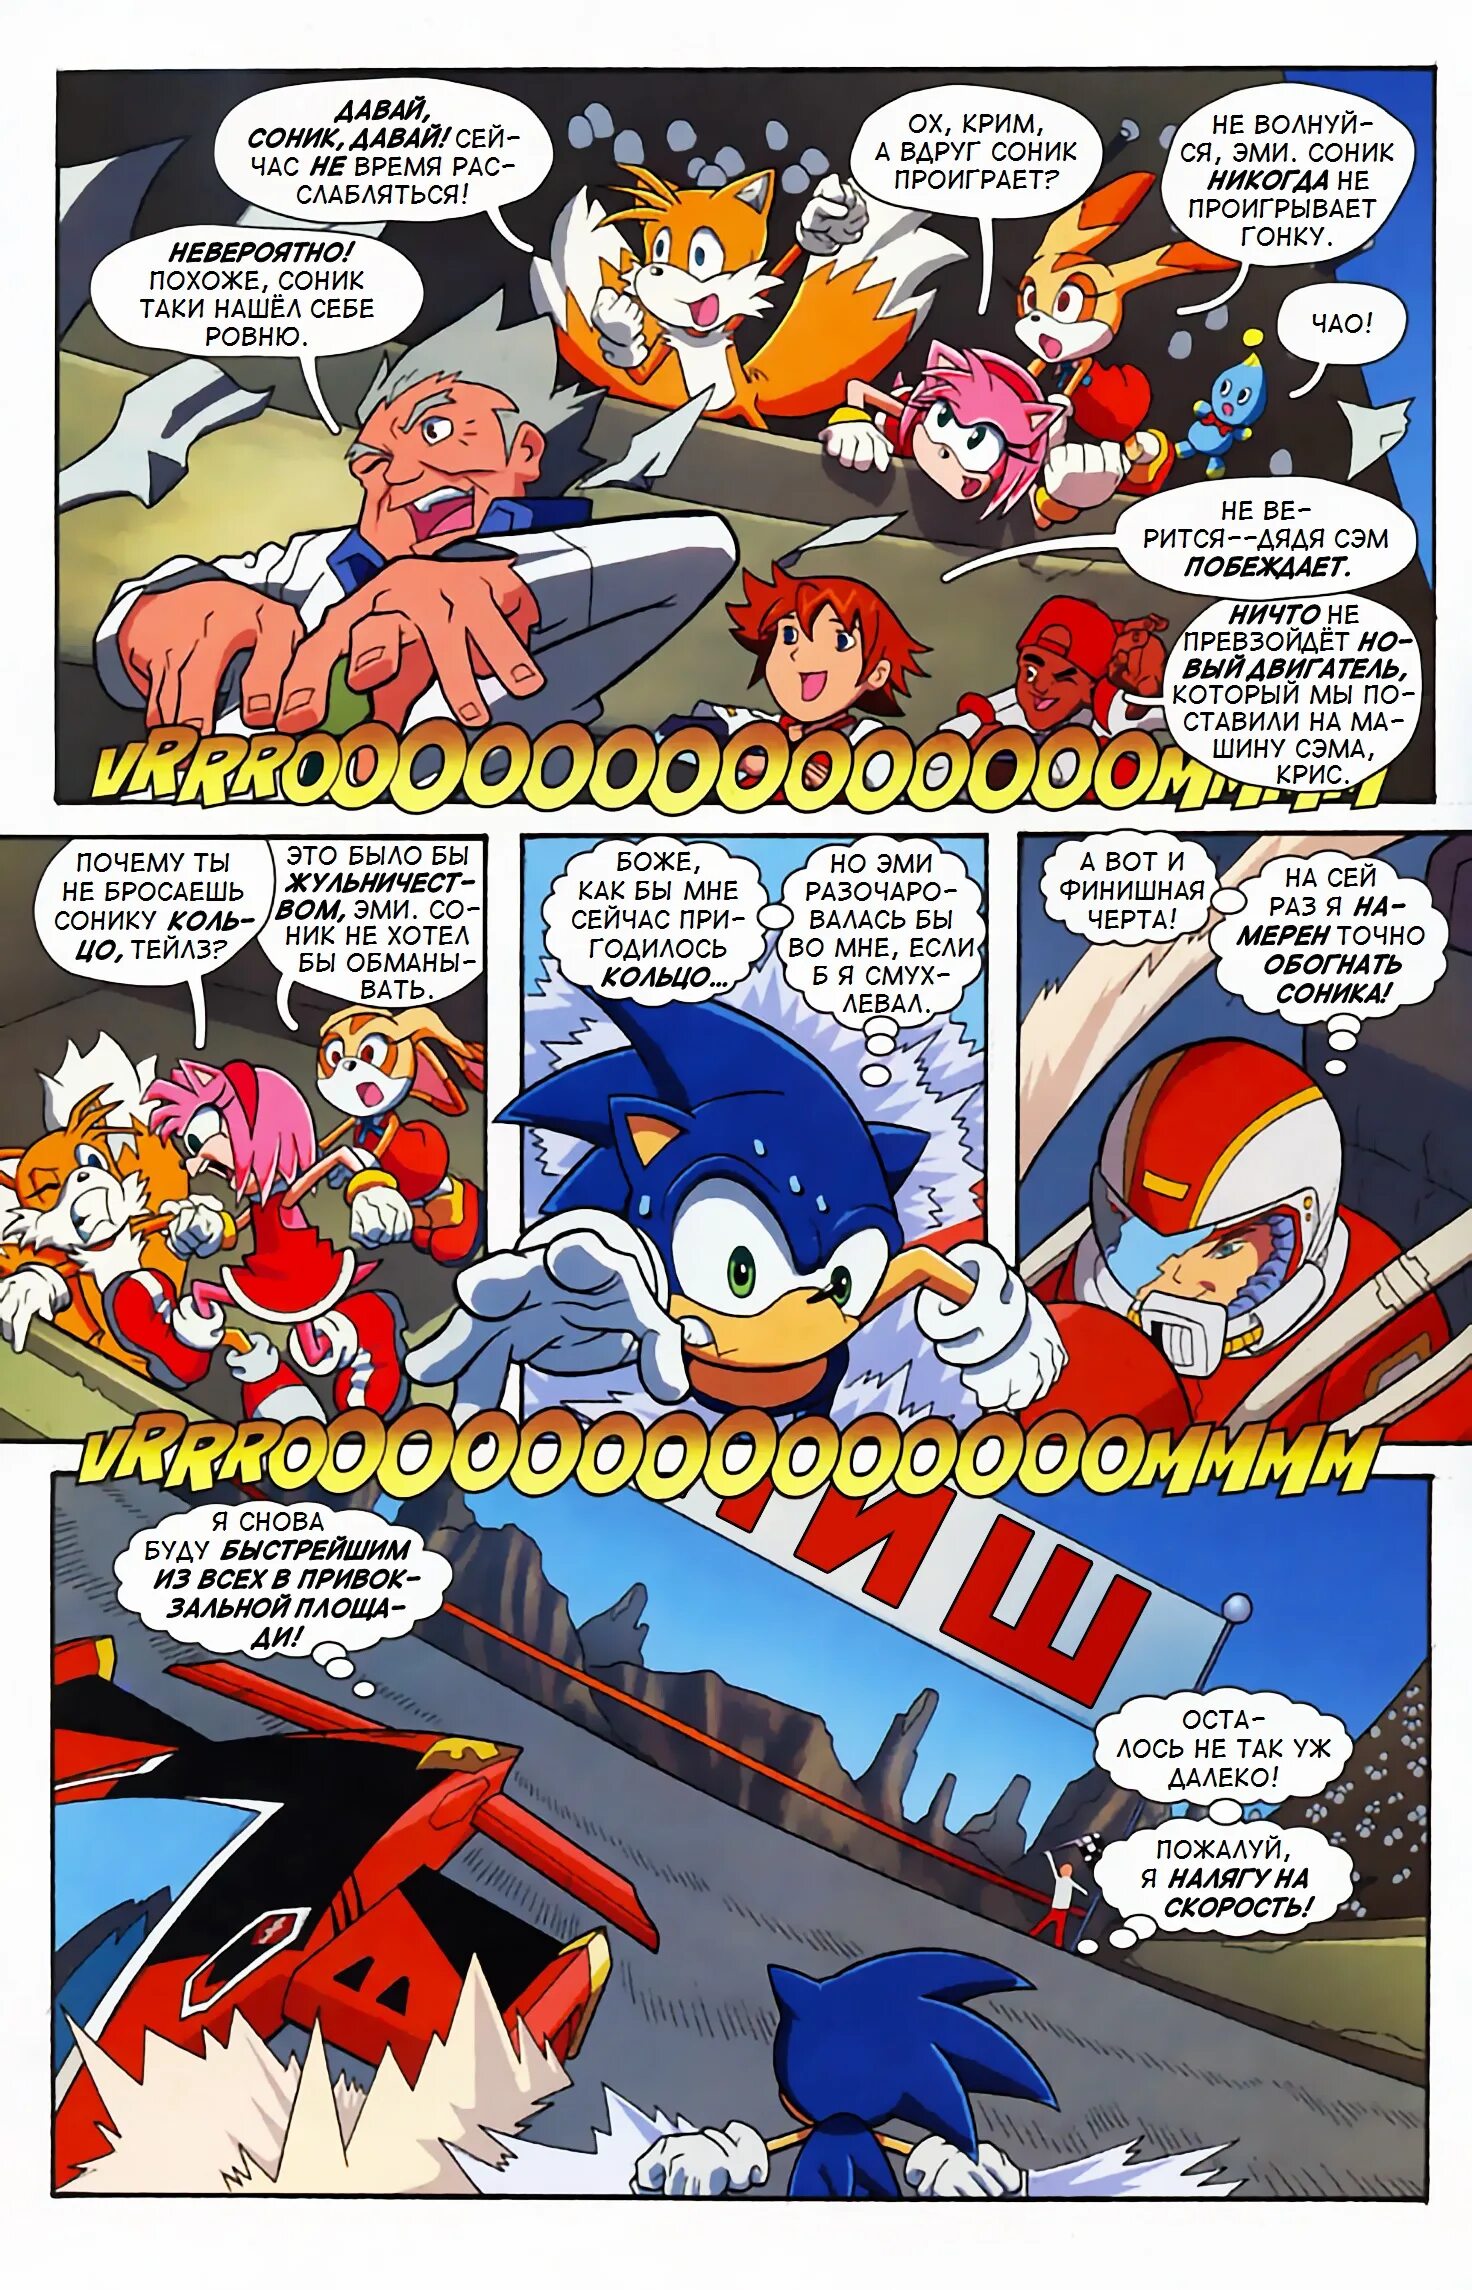 Читать соник комикс том. Комикс про Соника 1. Sonic комикс том 1. Комикс про Соника том 1. Соник комиксы Арчи.